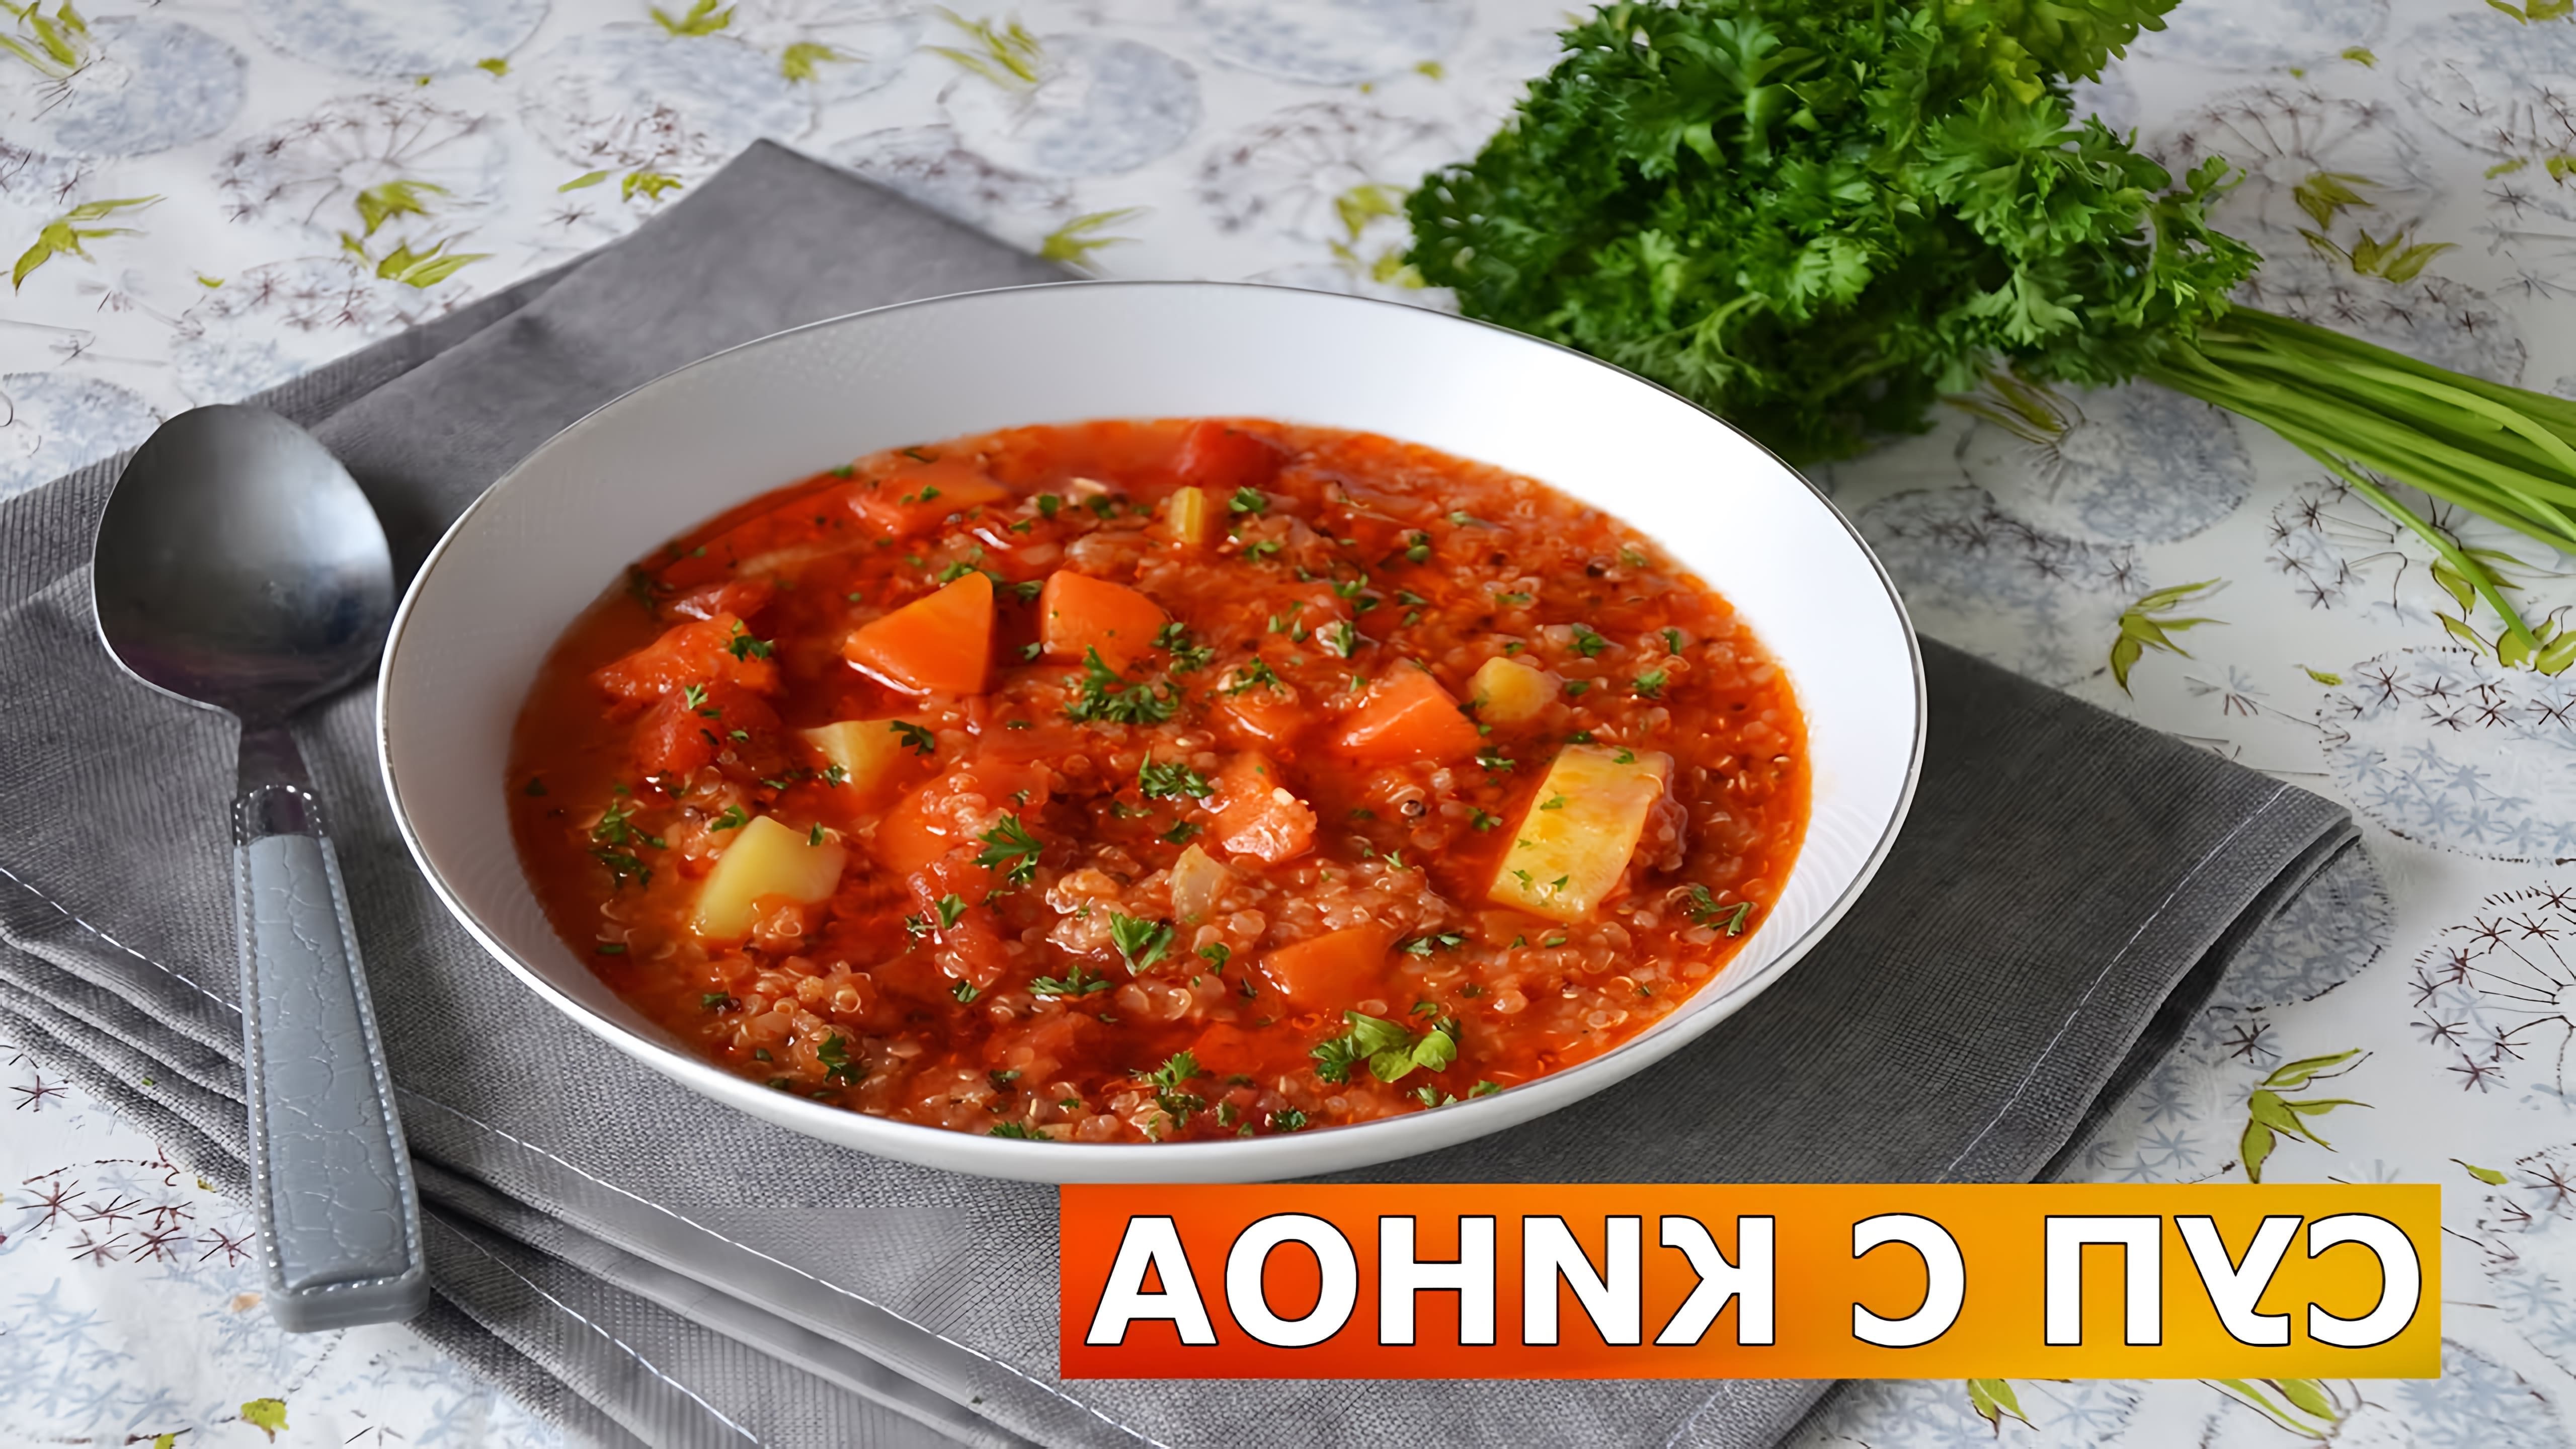 В этом видео-ролике вы увидите, как приготовить вкусный и полезный овощной постный суп с киноа